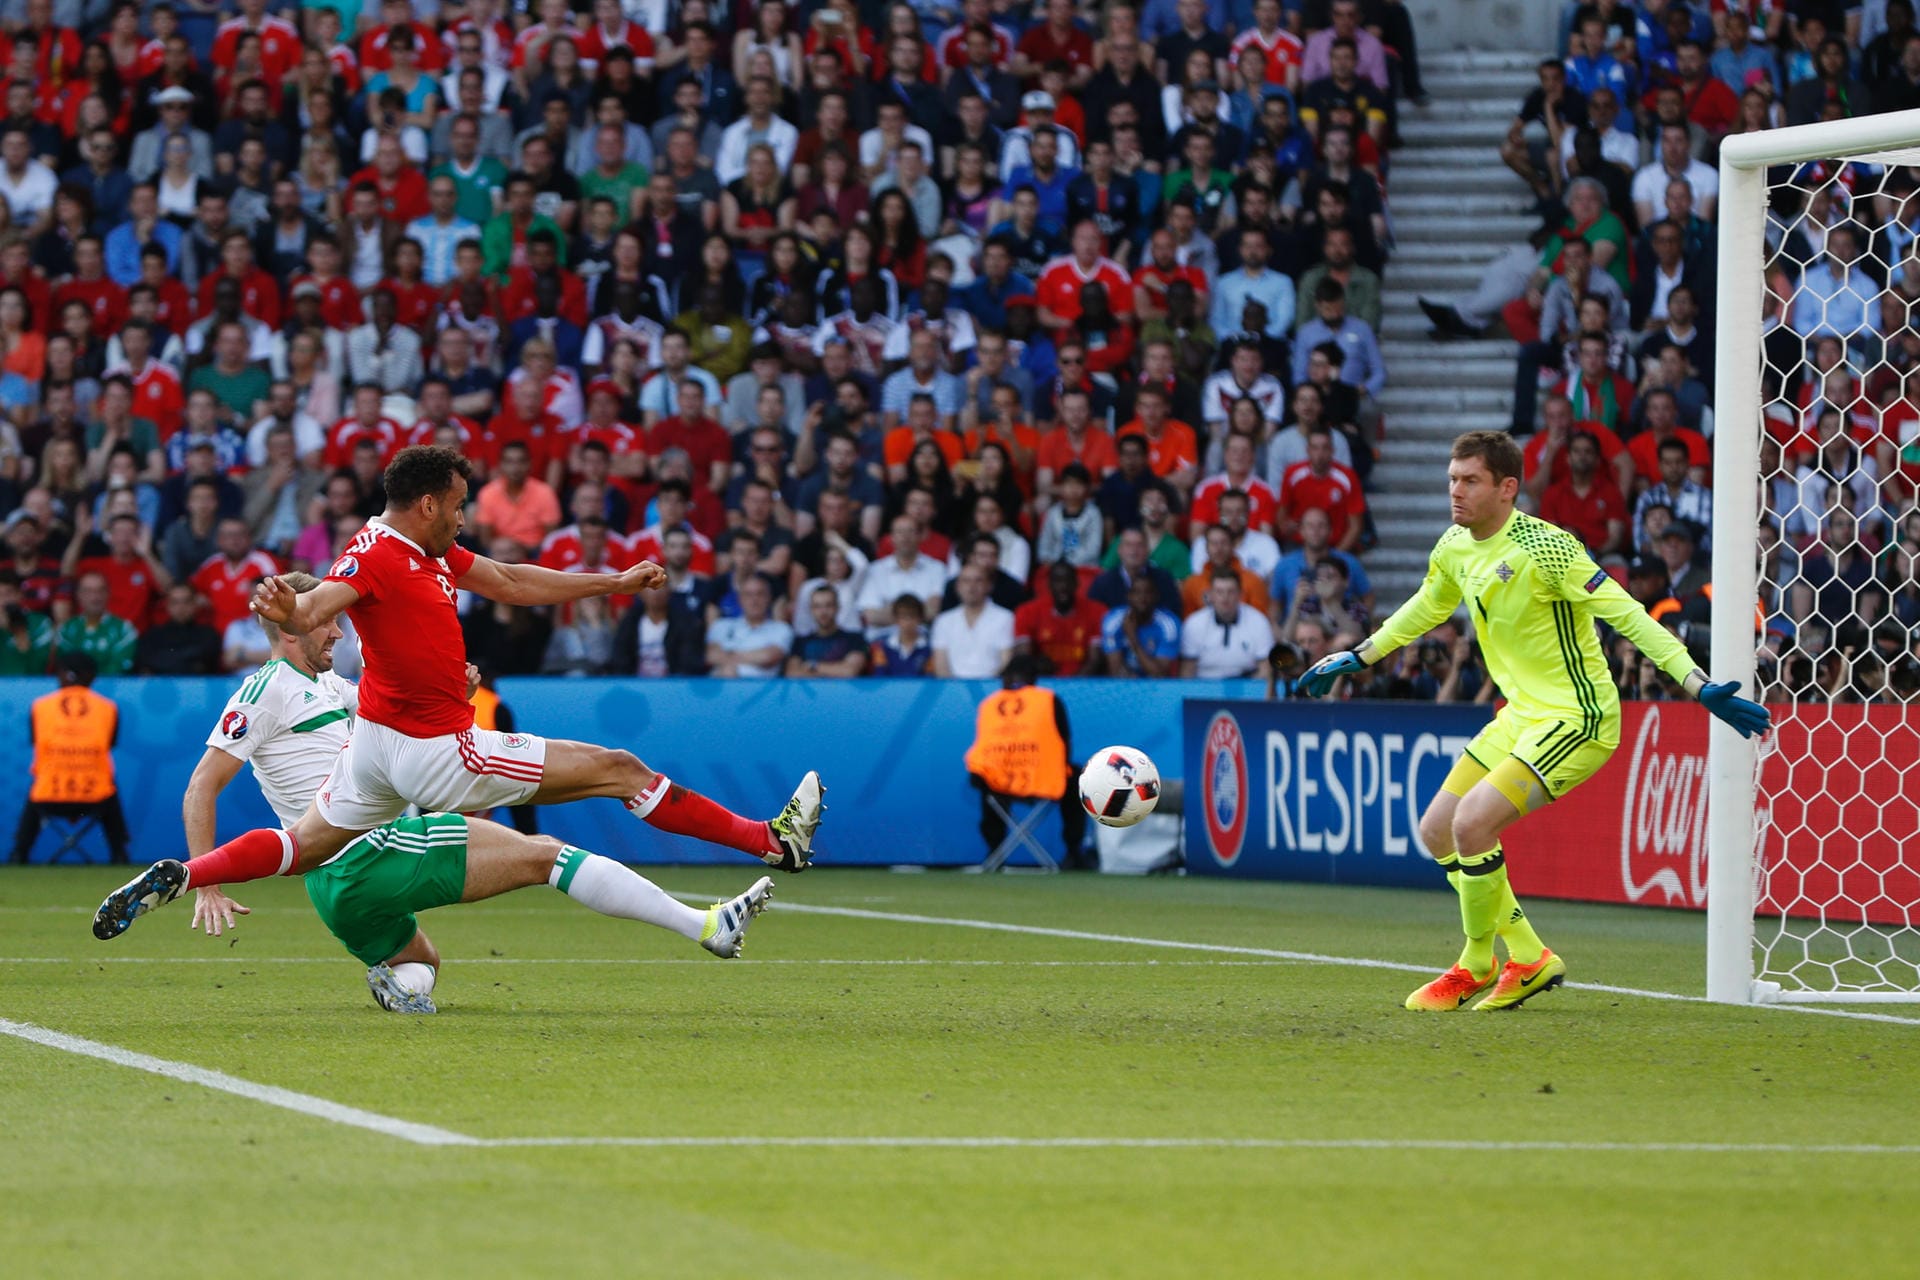 ... und dann passiert es! Wales geht durch ein Eigentor von Gareth McAuley in der 75. Minute mit 1:0 in Führung. Bale hatte zuvor eine scharfe Flanke von links hereingebracht. Am Ende bleibt es dabei, Wales steht im Viertelfinale, Nordirland scheidet aus.